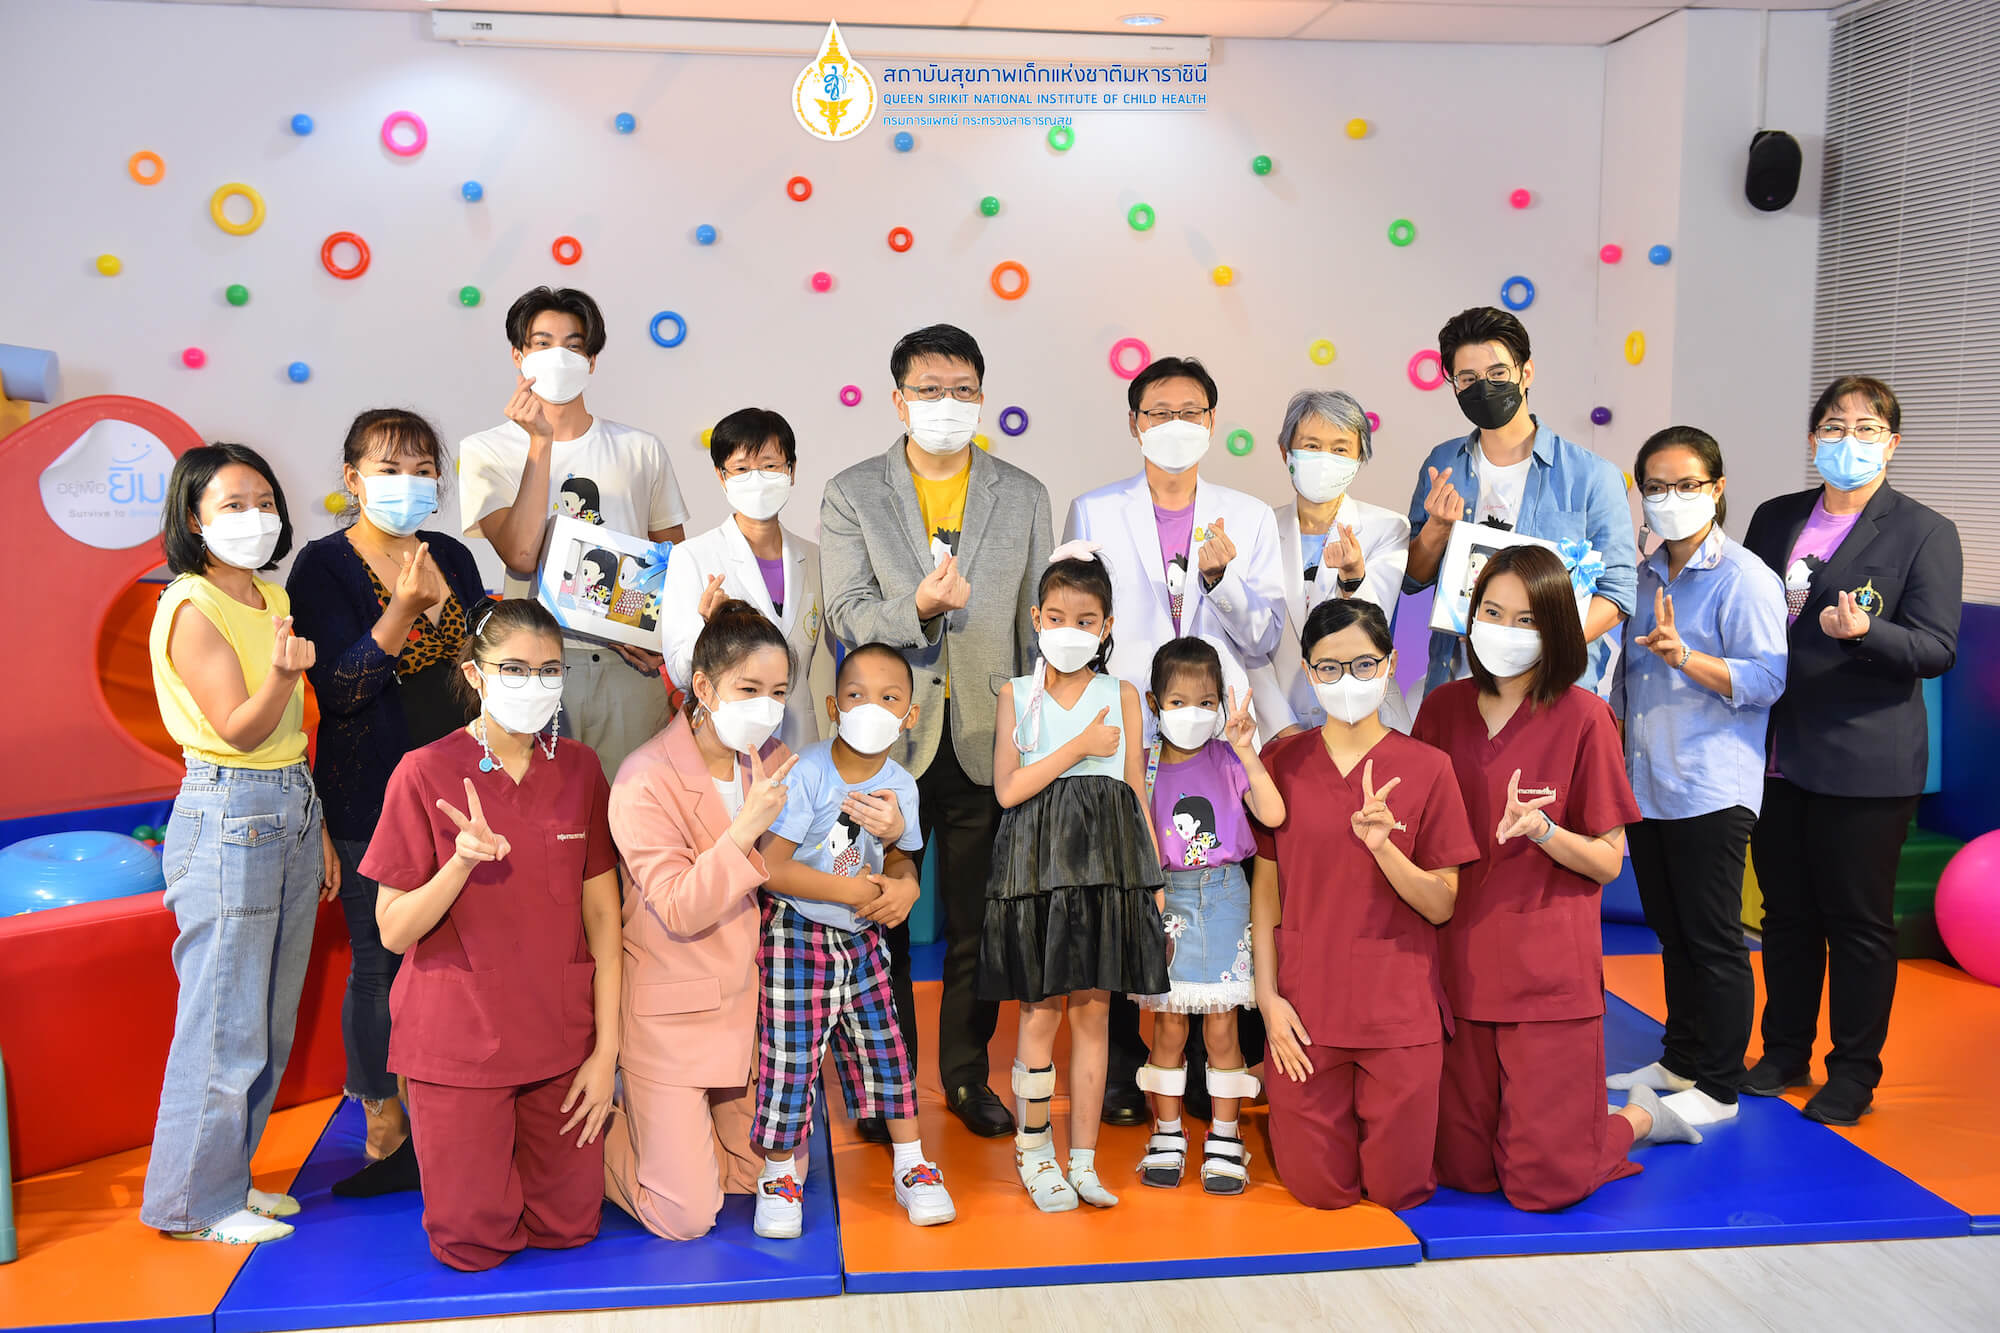 โครงการ Little Miracle ปาฏิหาริย์เล็กๆ เพื่อผู้ป่วยเด็กห้องไอซียู กองทุนอาคารเฉลิมพระเกียรติฯ มูลนิธิโรงพยาบาลเด็ก